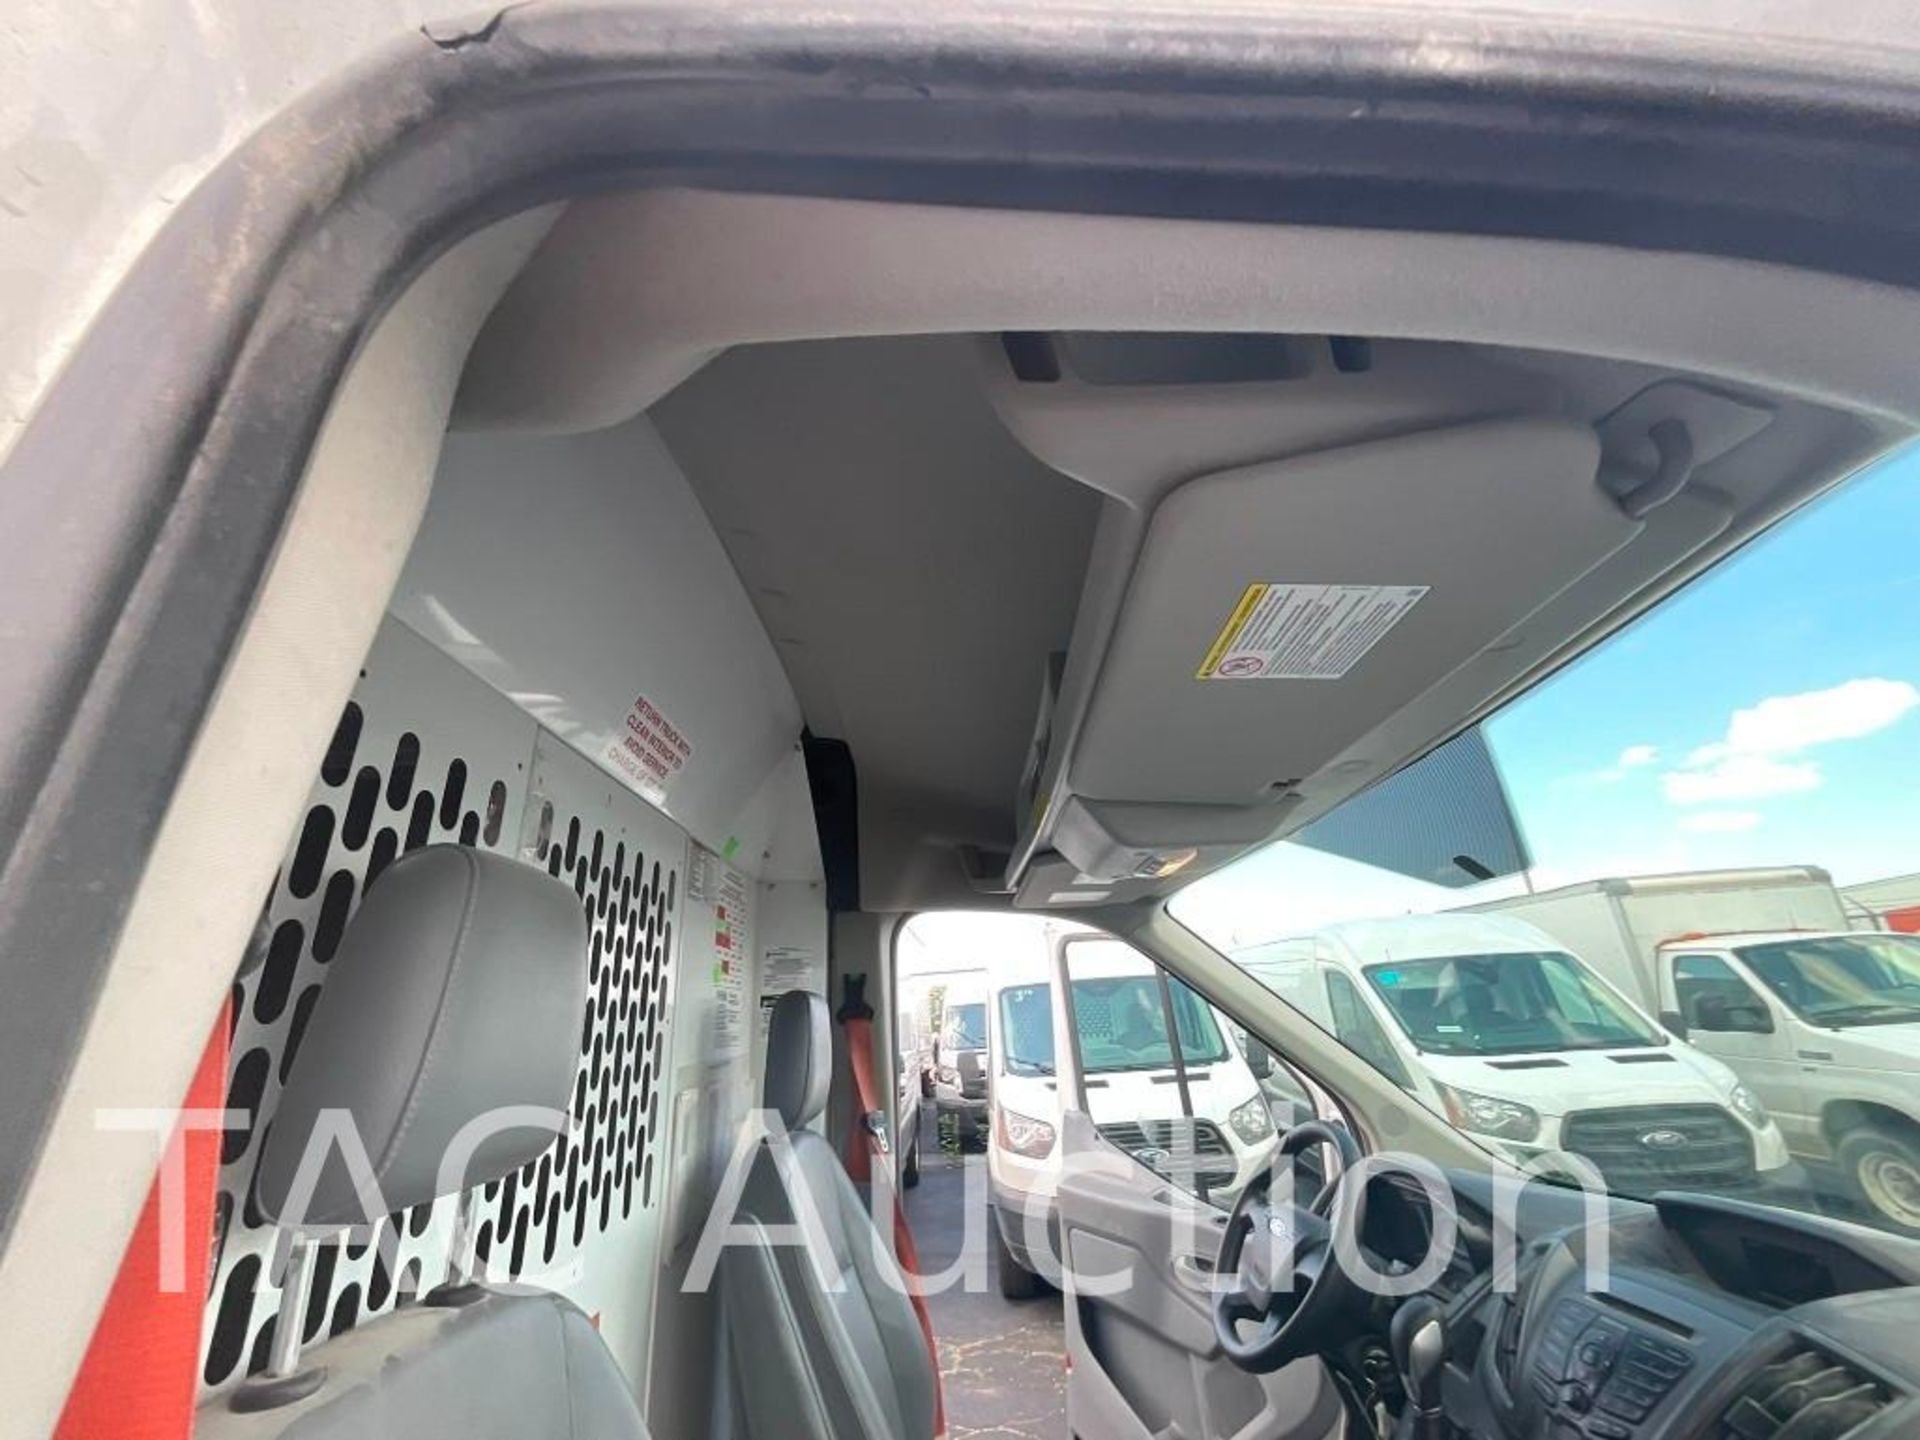 2019 Ford Transit 150 Cargo Van - Image 23 of 47